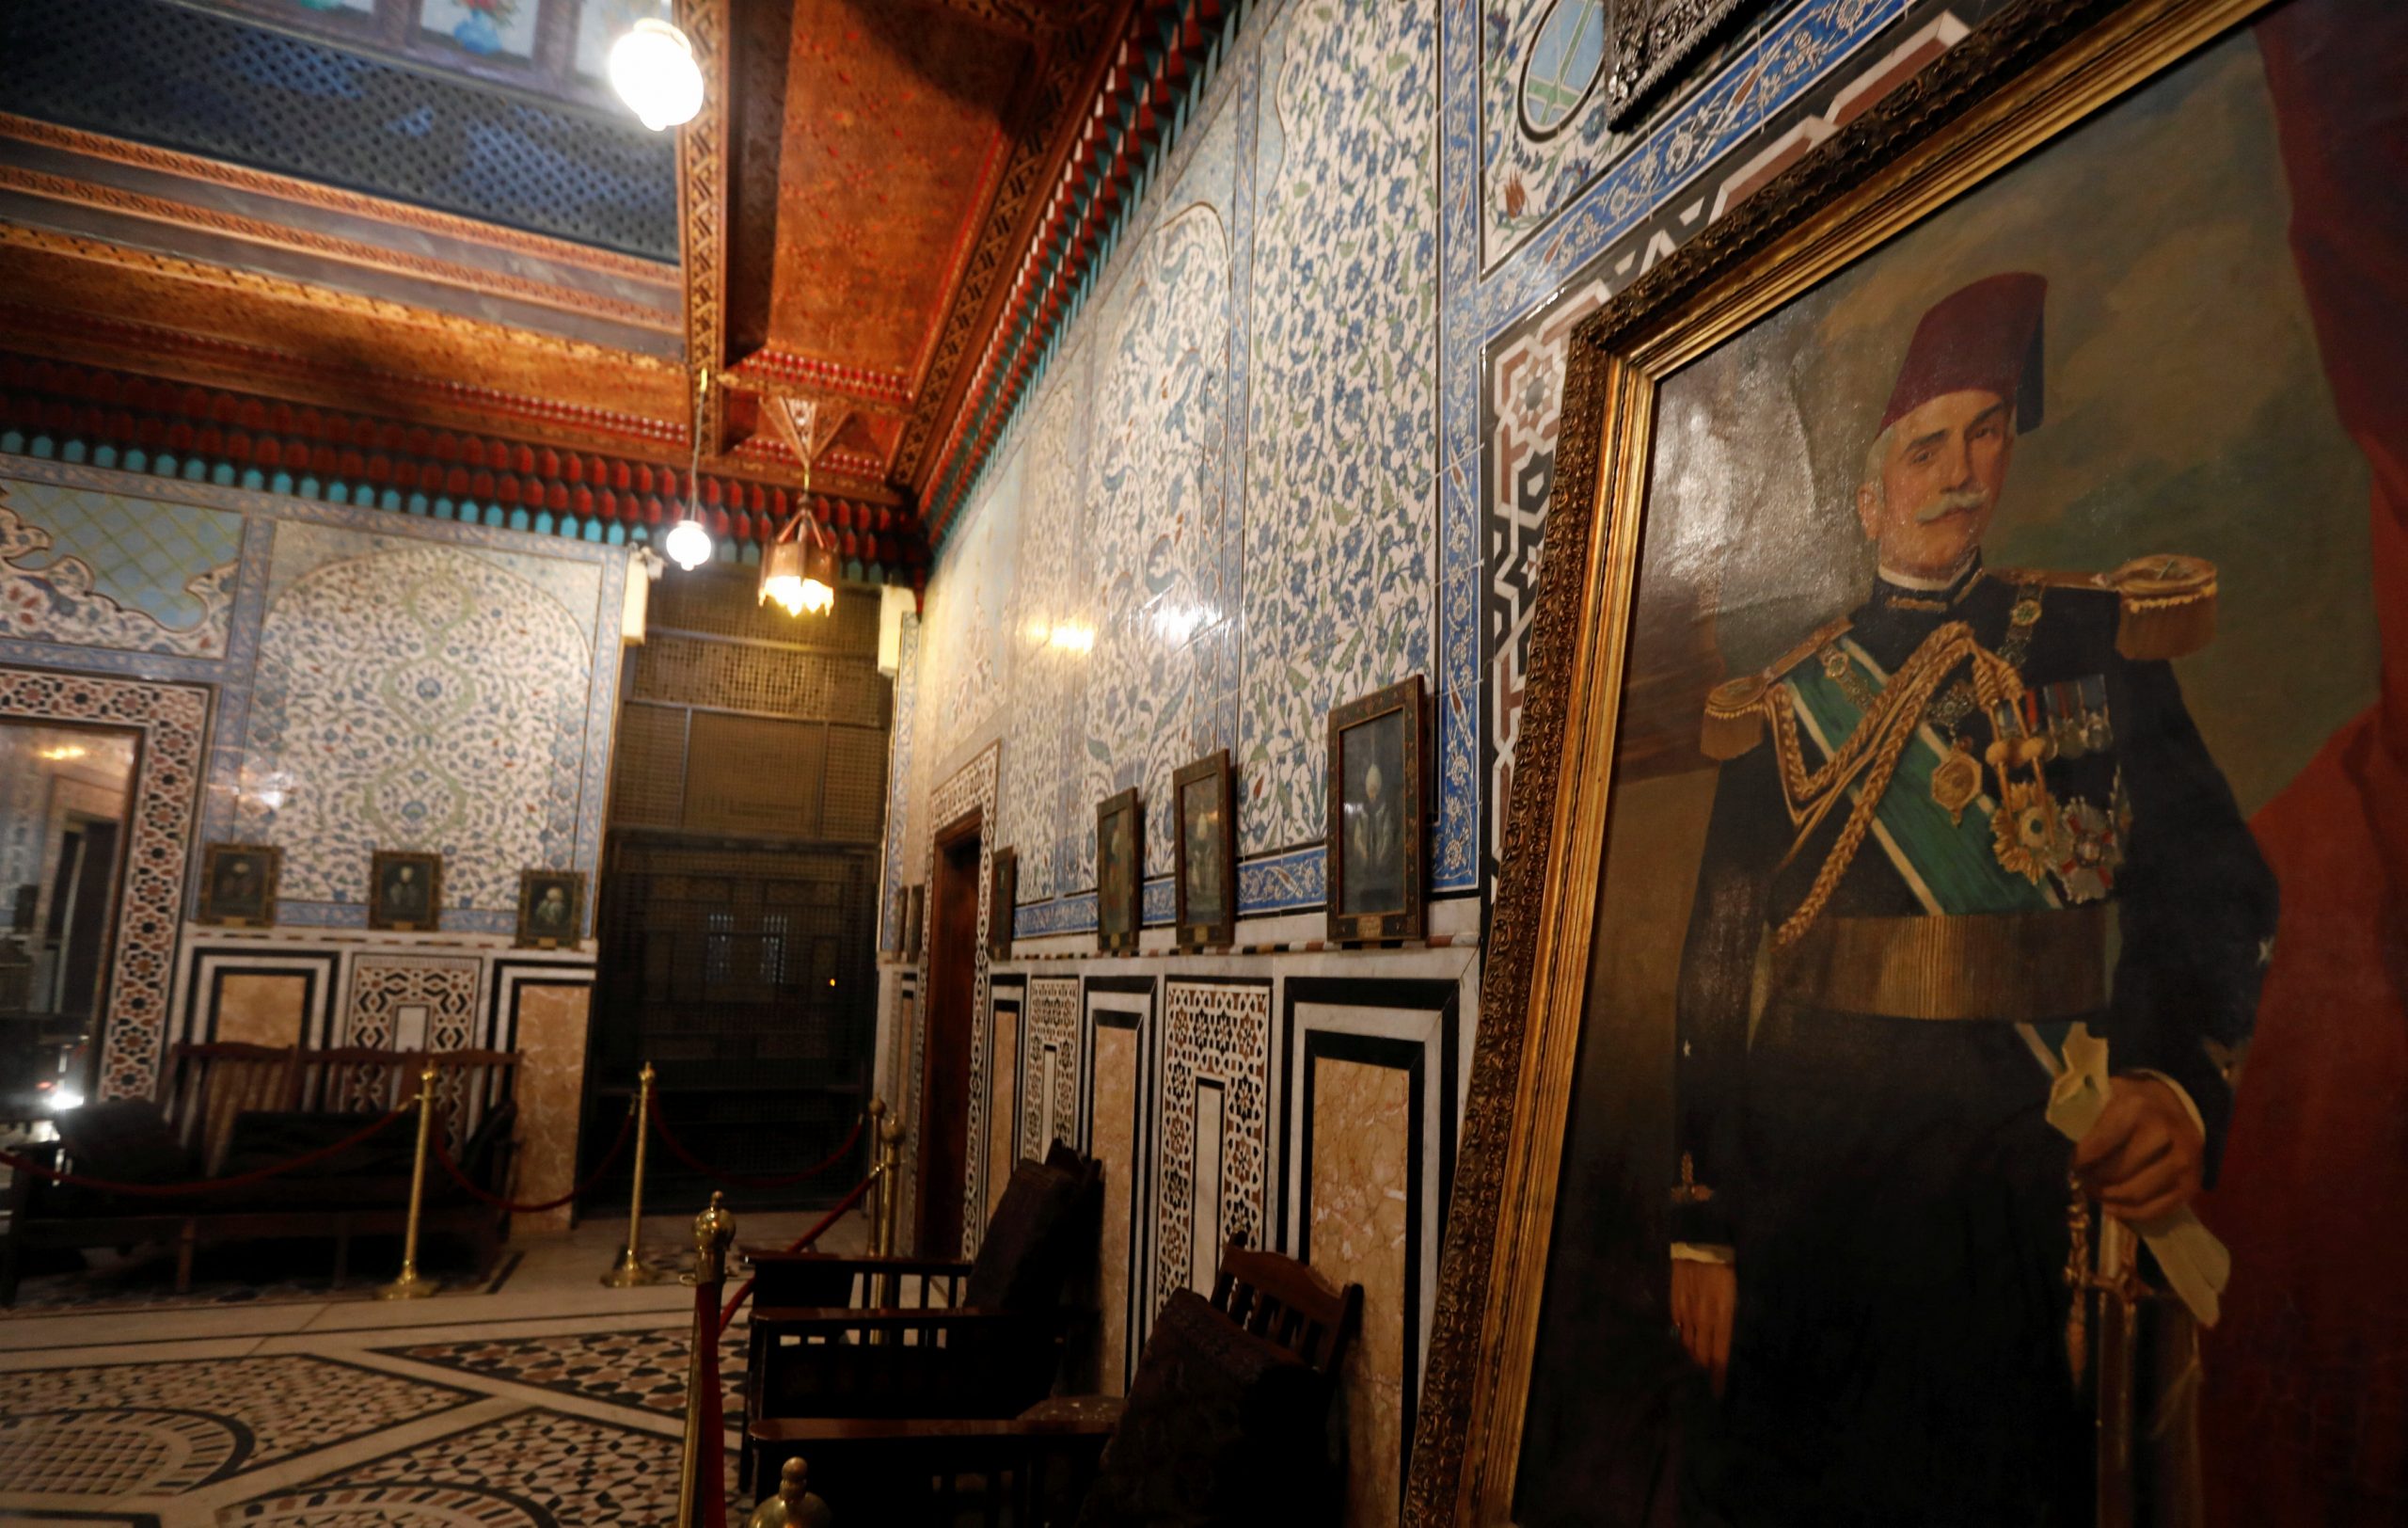   بمناسبة مرور 117 عاما على إنشاء قصر الأمير محمد على الدخول مجانا للمصريين